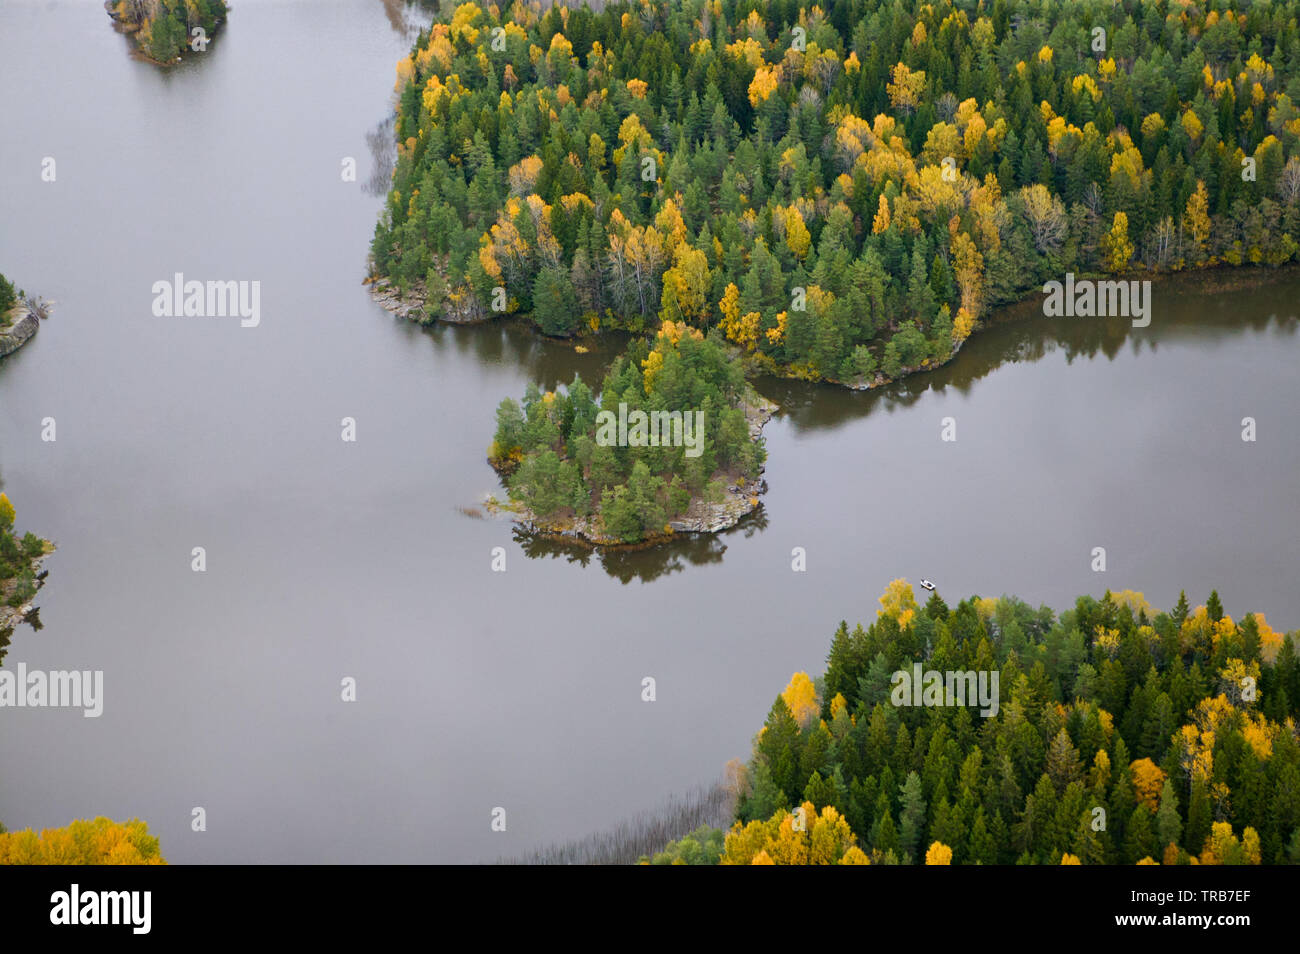 Vista aerea su una parte del lago Vansjø in Østfold, Norvegia. Questa zona è chiamata Sunna e la piccola penisola nel centro è chiamato Abbor'n, che è una parte dell'isola Bliksøya. Vansjø è il lago più grande in Østfold. Ottobre, 2004. Foto Stock